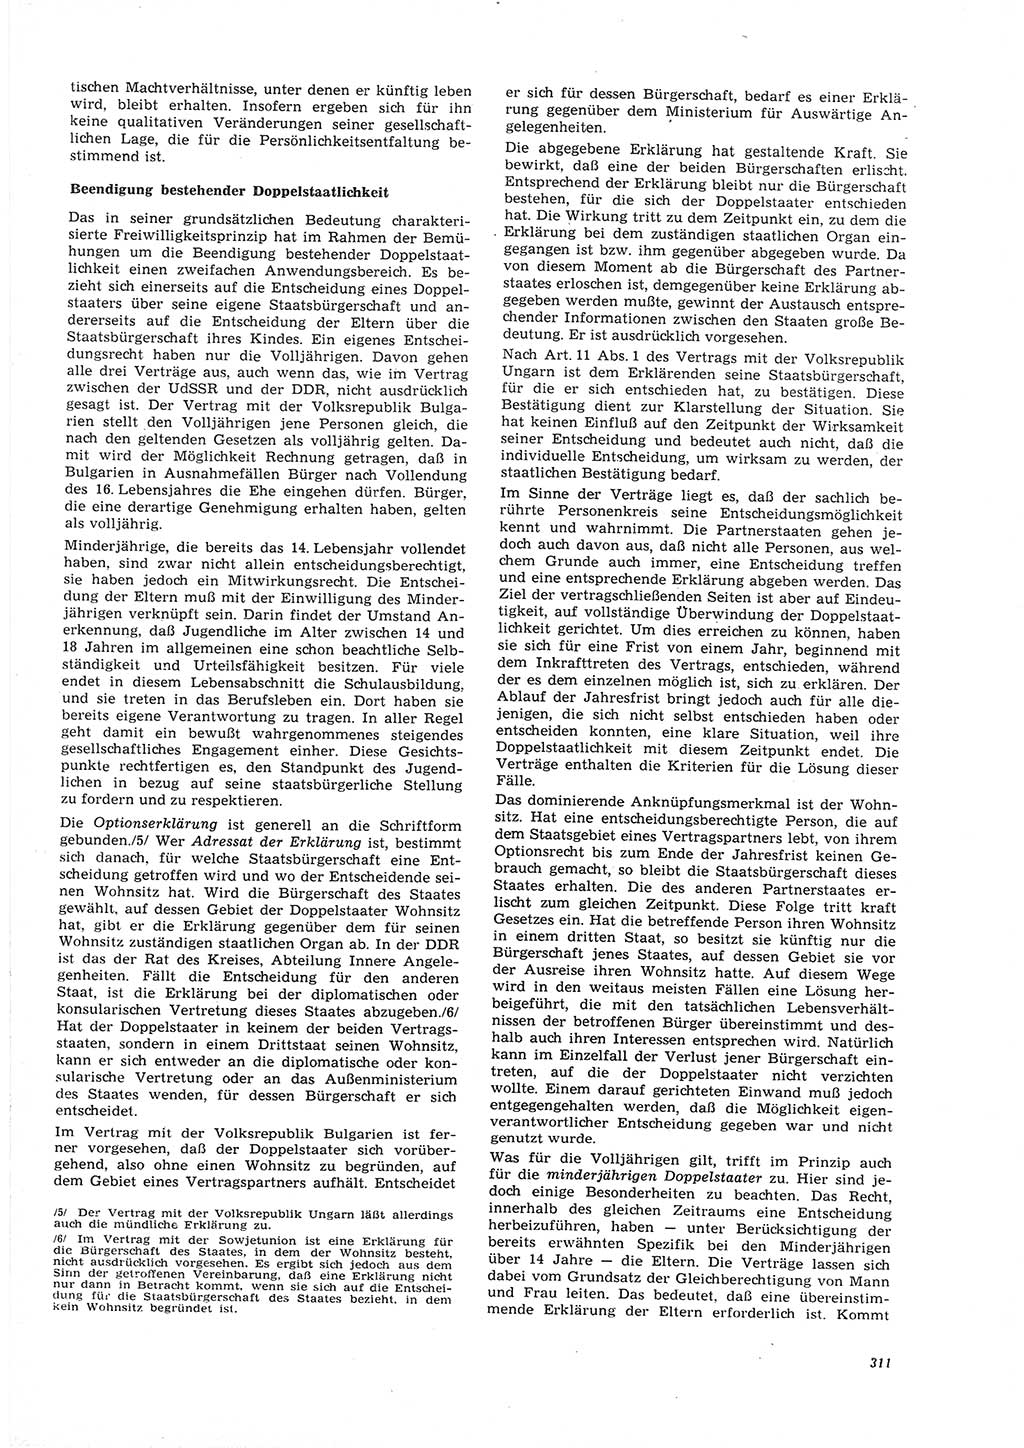 Neue Justiz (NJ), Zeitschrift für Recht und Rechtswissenschaft [Deutsche Demokratische Republik (DDR)], 26. Jahrgang 1972, Seite 311 (NJ DDR 1972, S. 311)